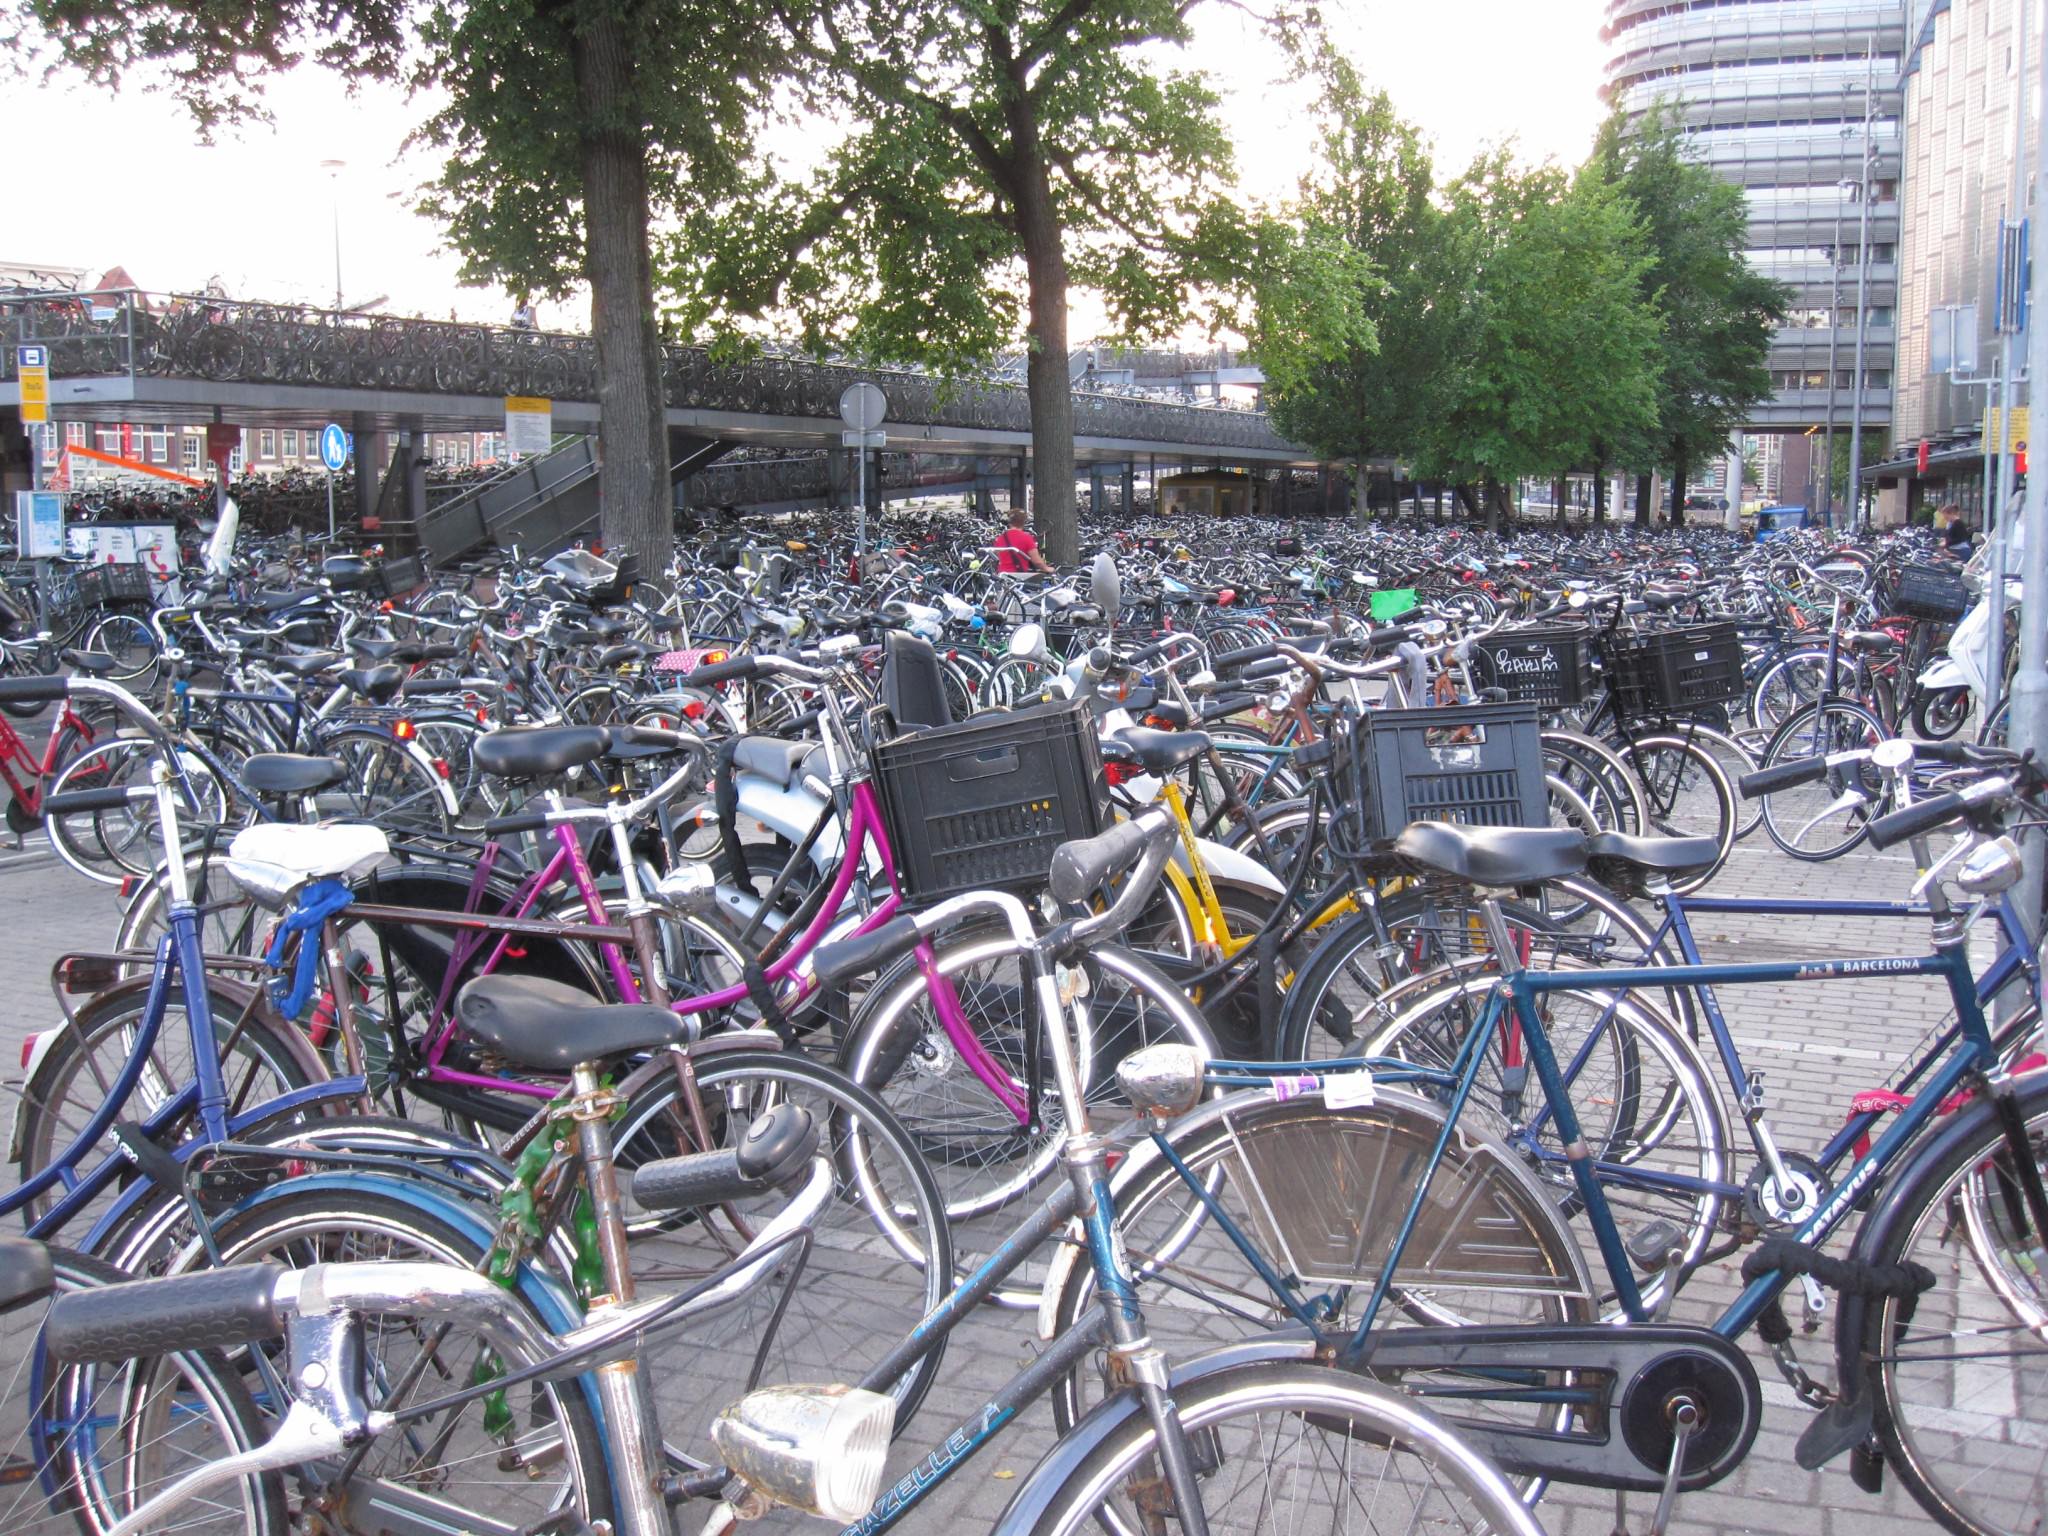 Sea of bikes in Amsterdam